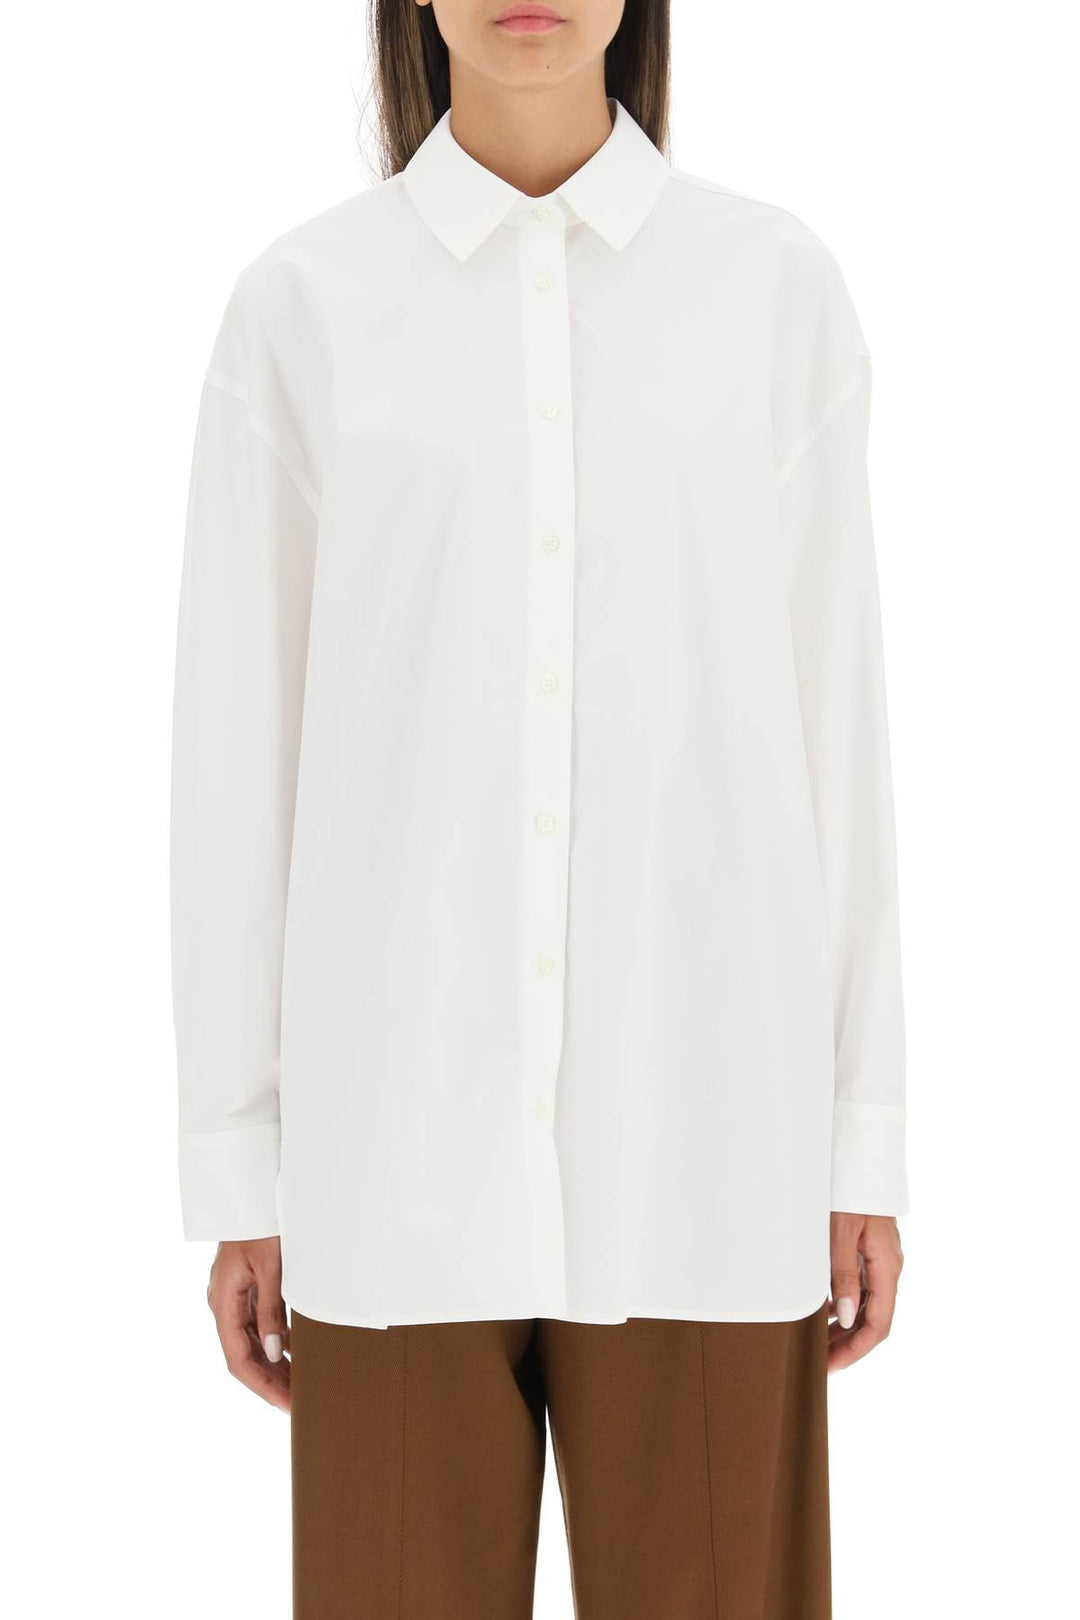 Loulou Studio Espanto Oversized Cotton Shirt   White